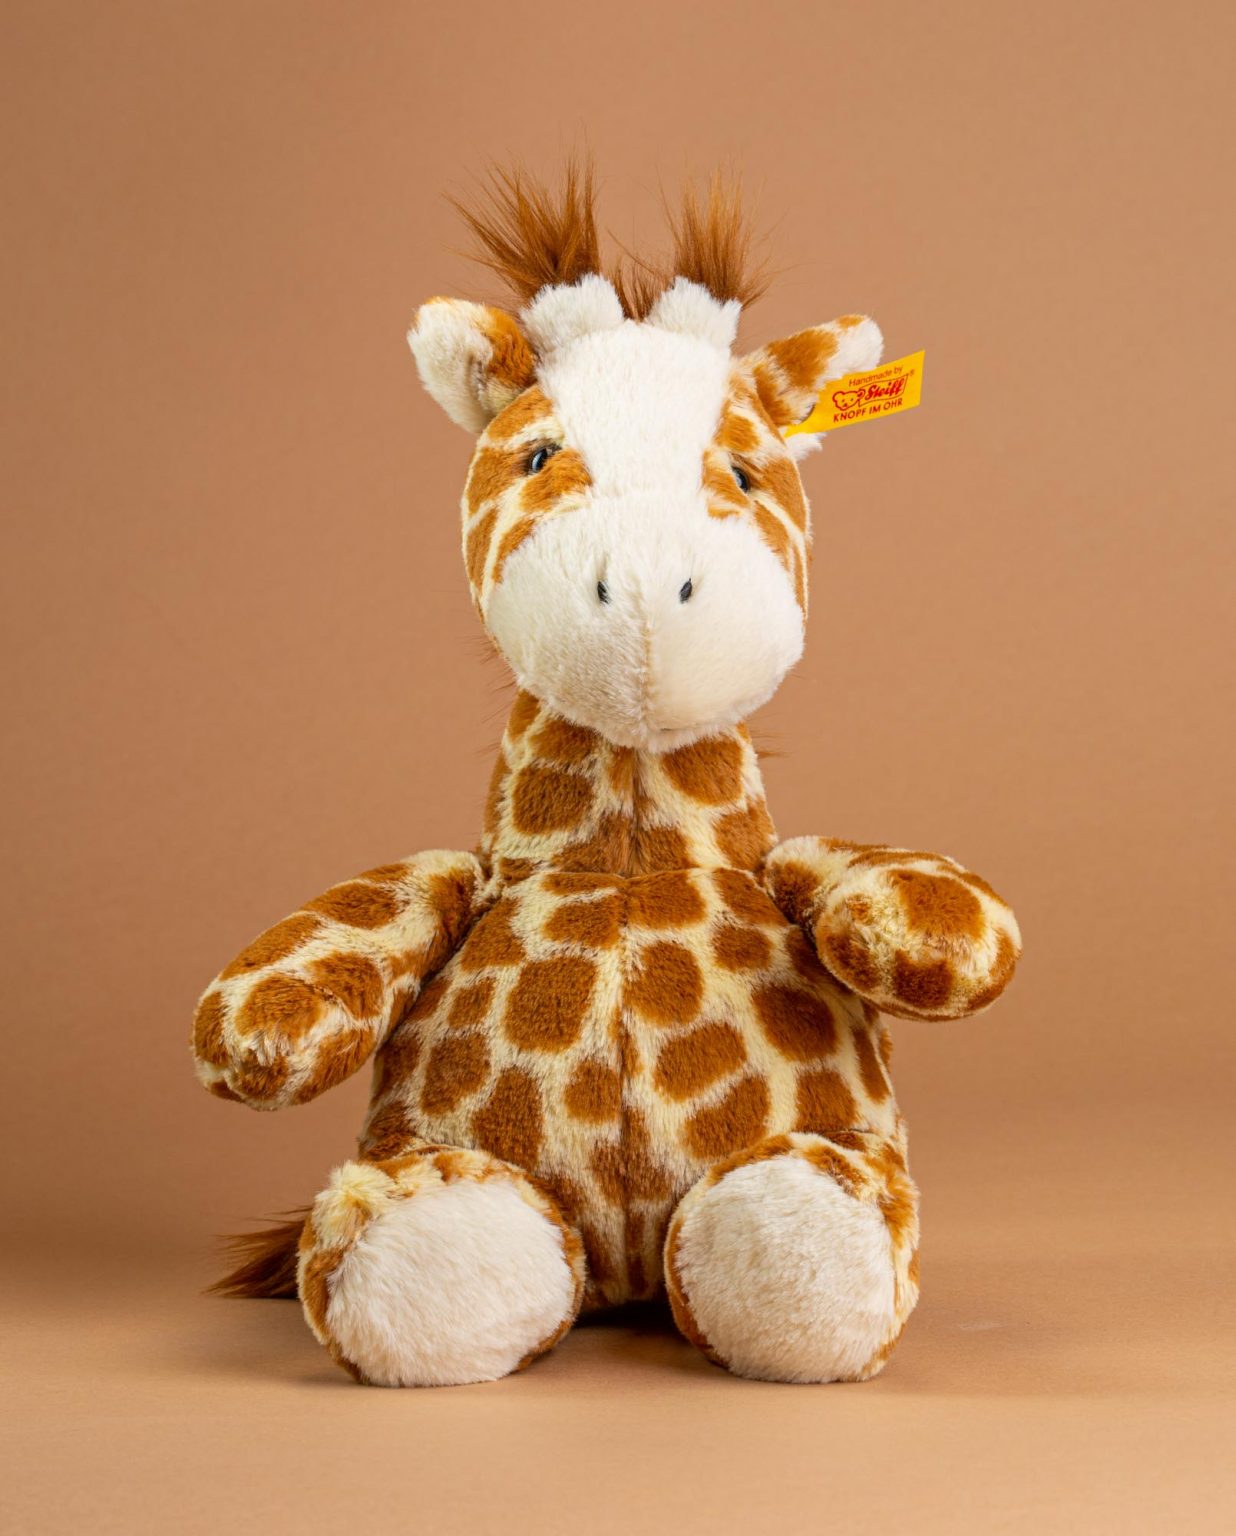 Girta Giraffe by Steiff - Send A Cuddly